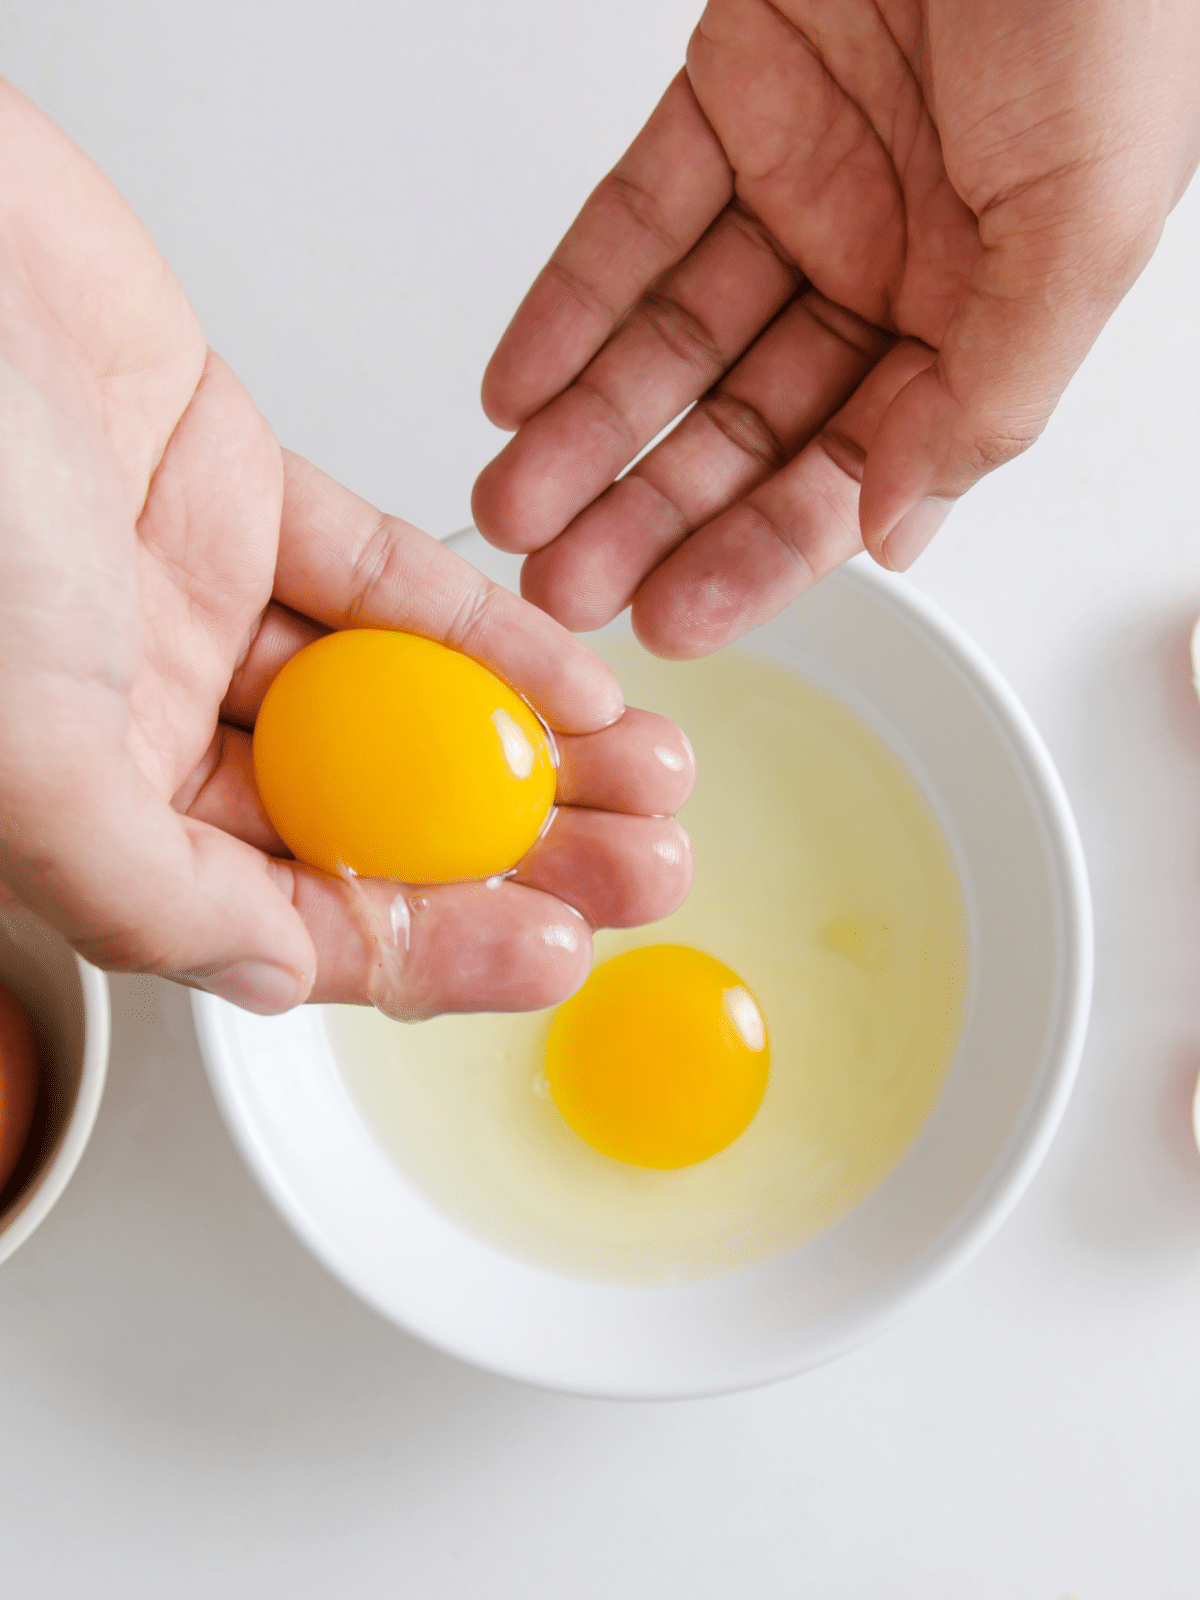 separating eftover egg yolks